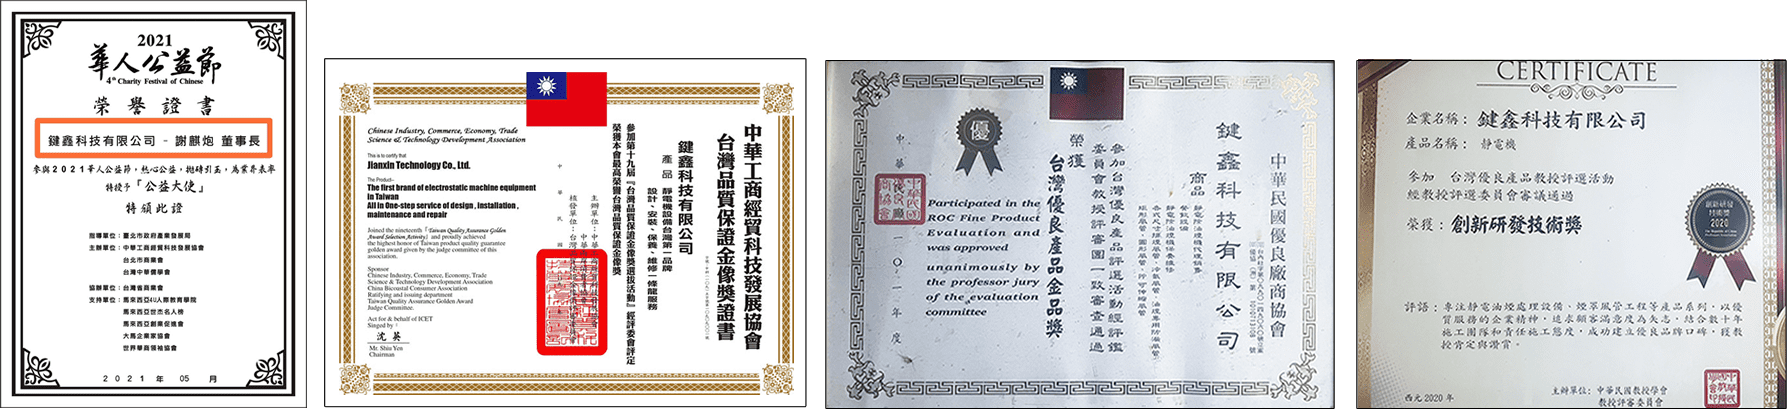 台灣品質保證金像獎證書